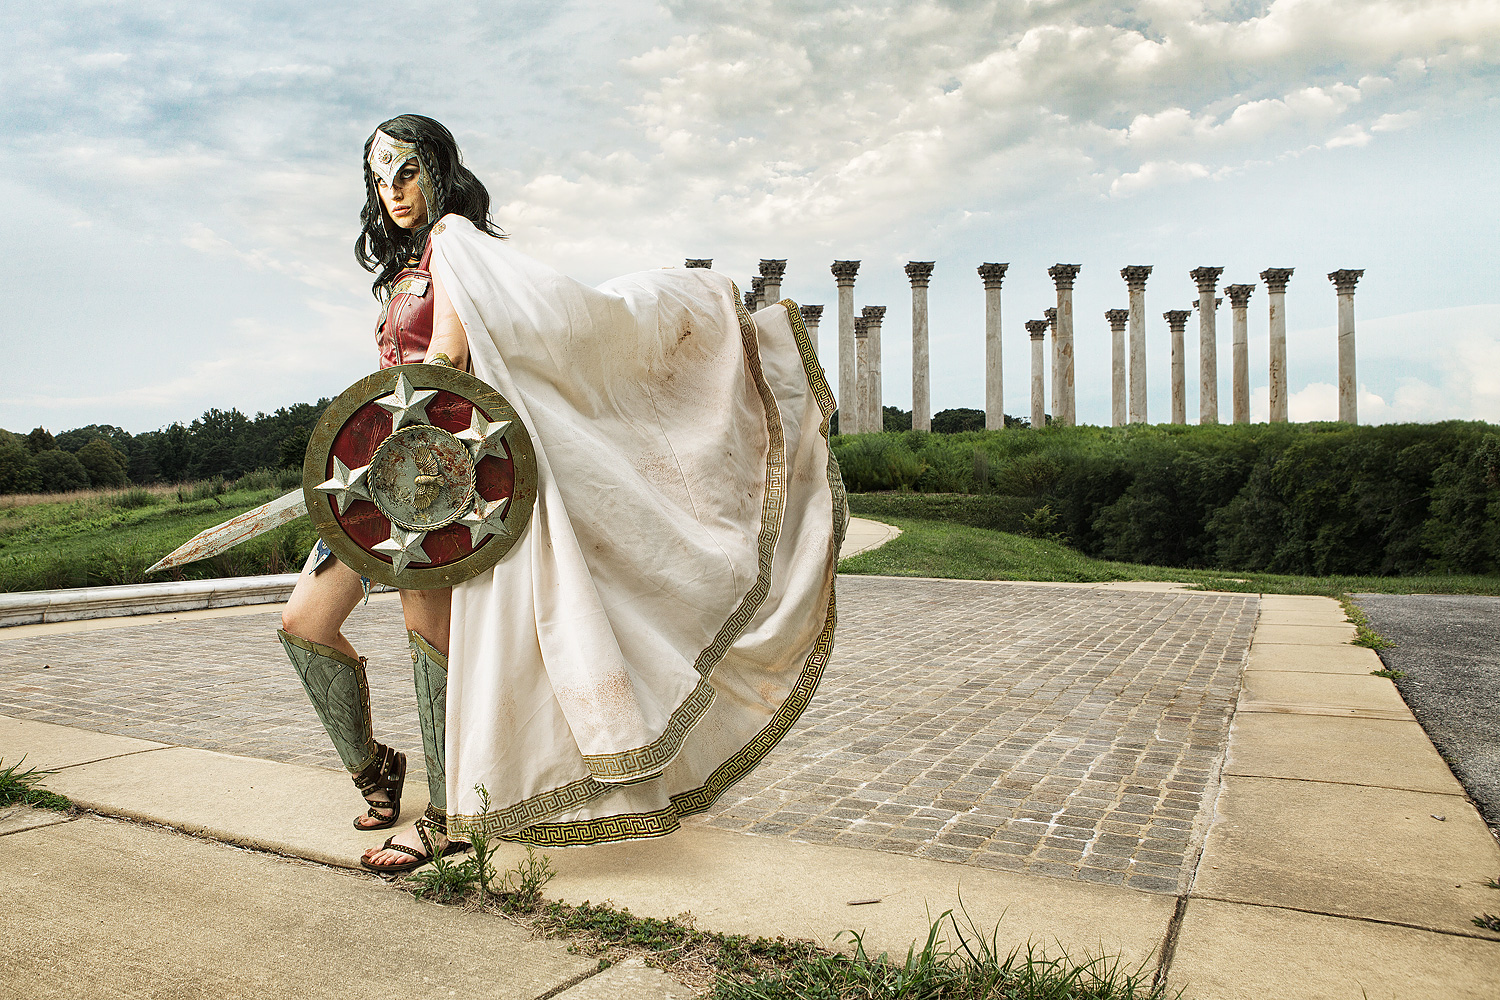 Meagan Marie as Gladiator Wonder Woman